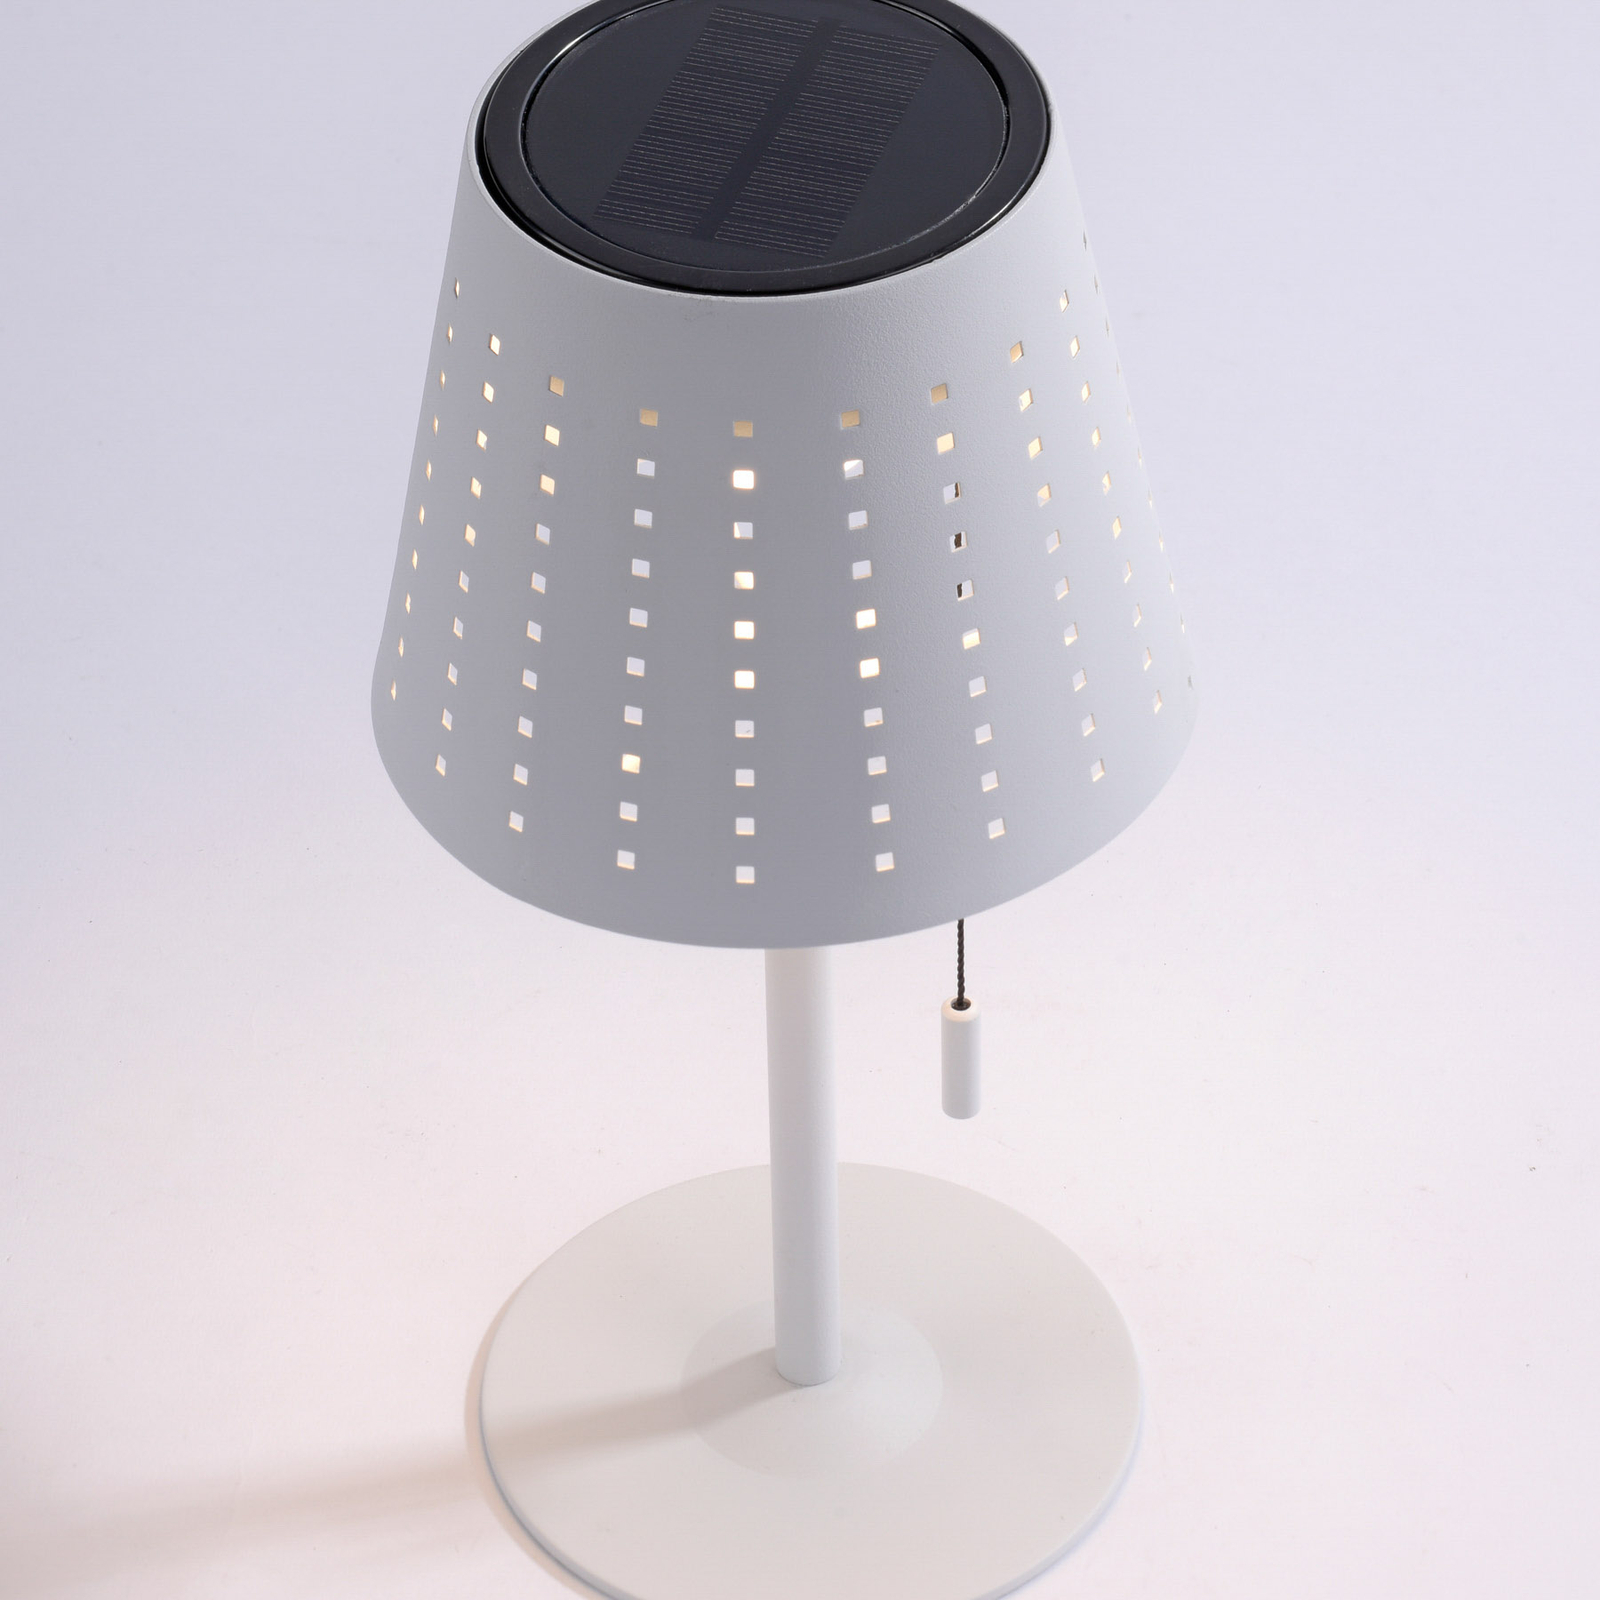 Stolová LED lampa Mandy pripojenie USB solár biela